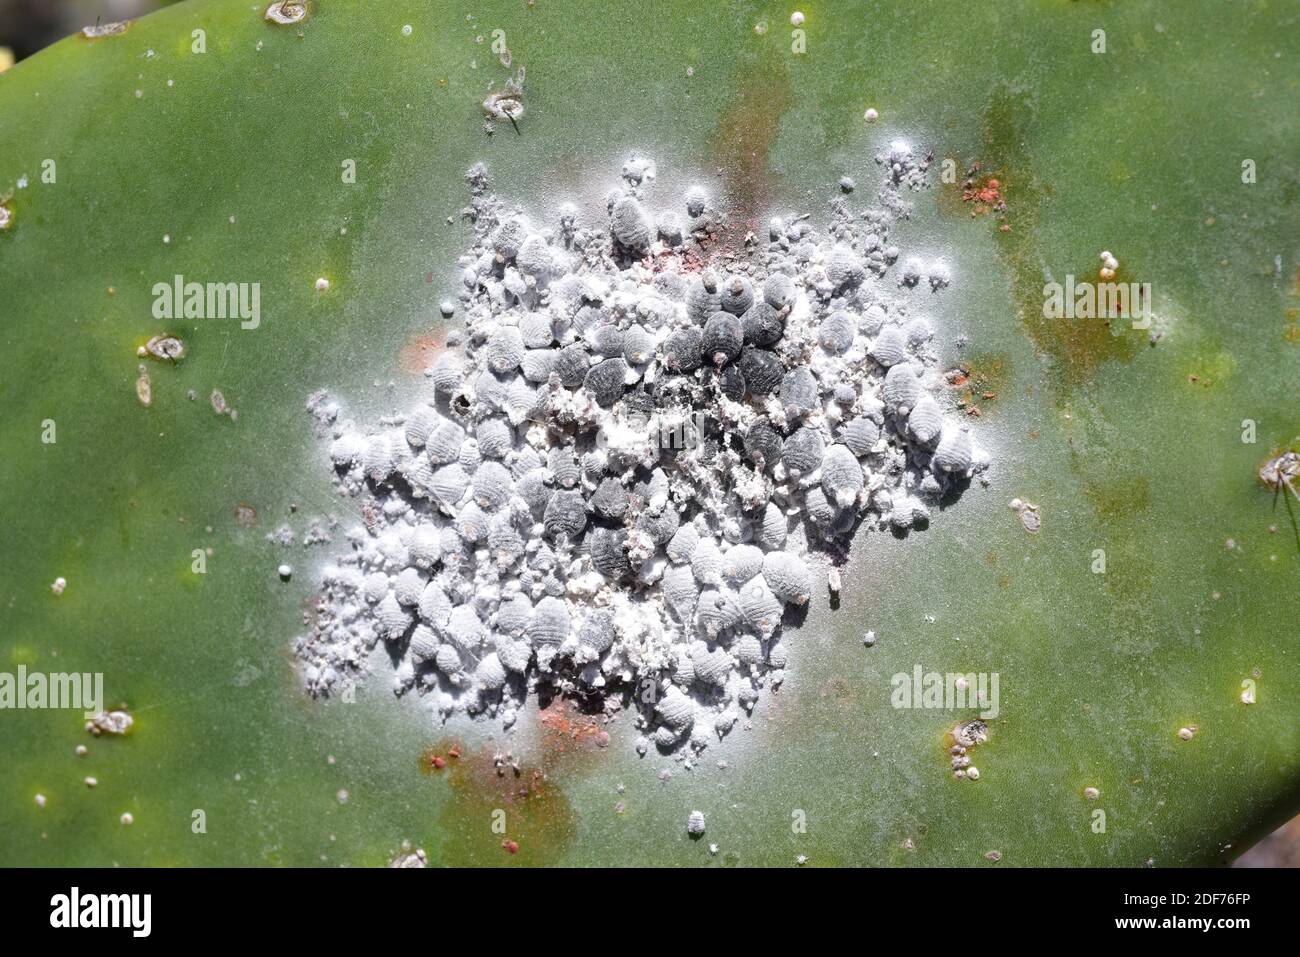 La cochinilla (Dactylopius coccus) es un insecto hemiptera que se extrae con colorante carmina. Esta foto fue tomada en Guatiza, Isla de Lanzarote, Canarias Foto de stock